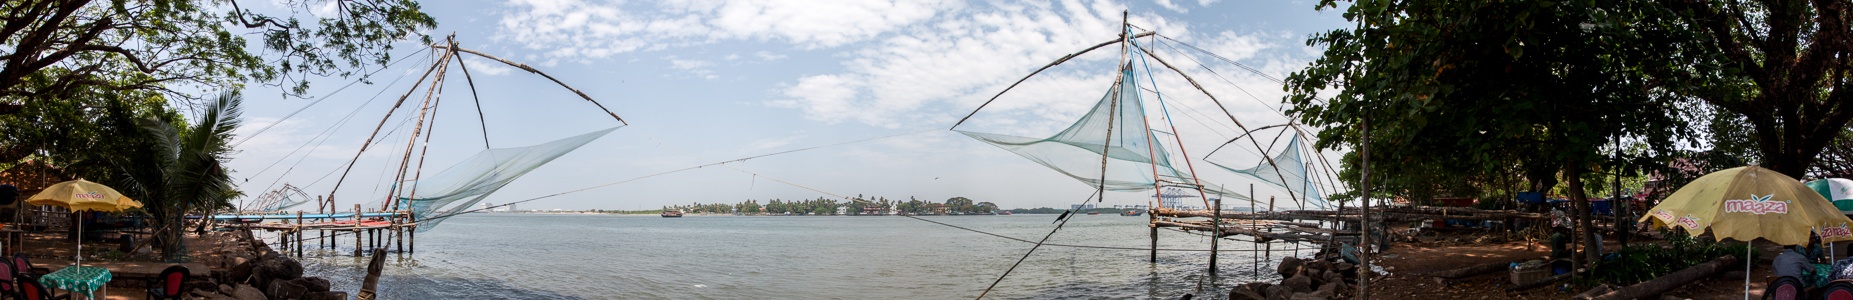 Fort Kochi: Chinesische Fischernetze, Vembanad Lake